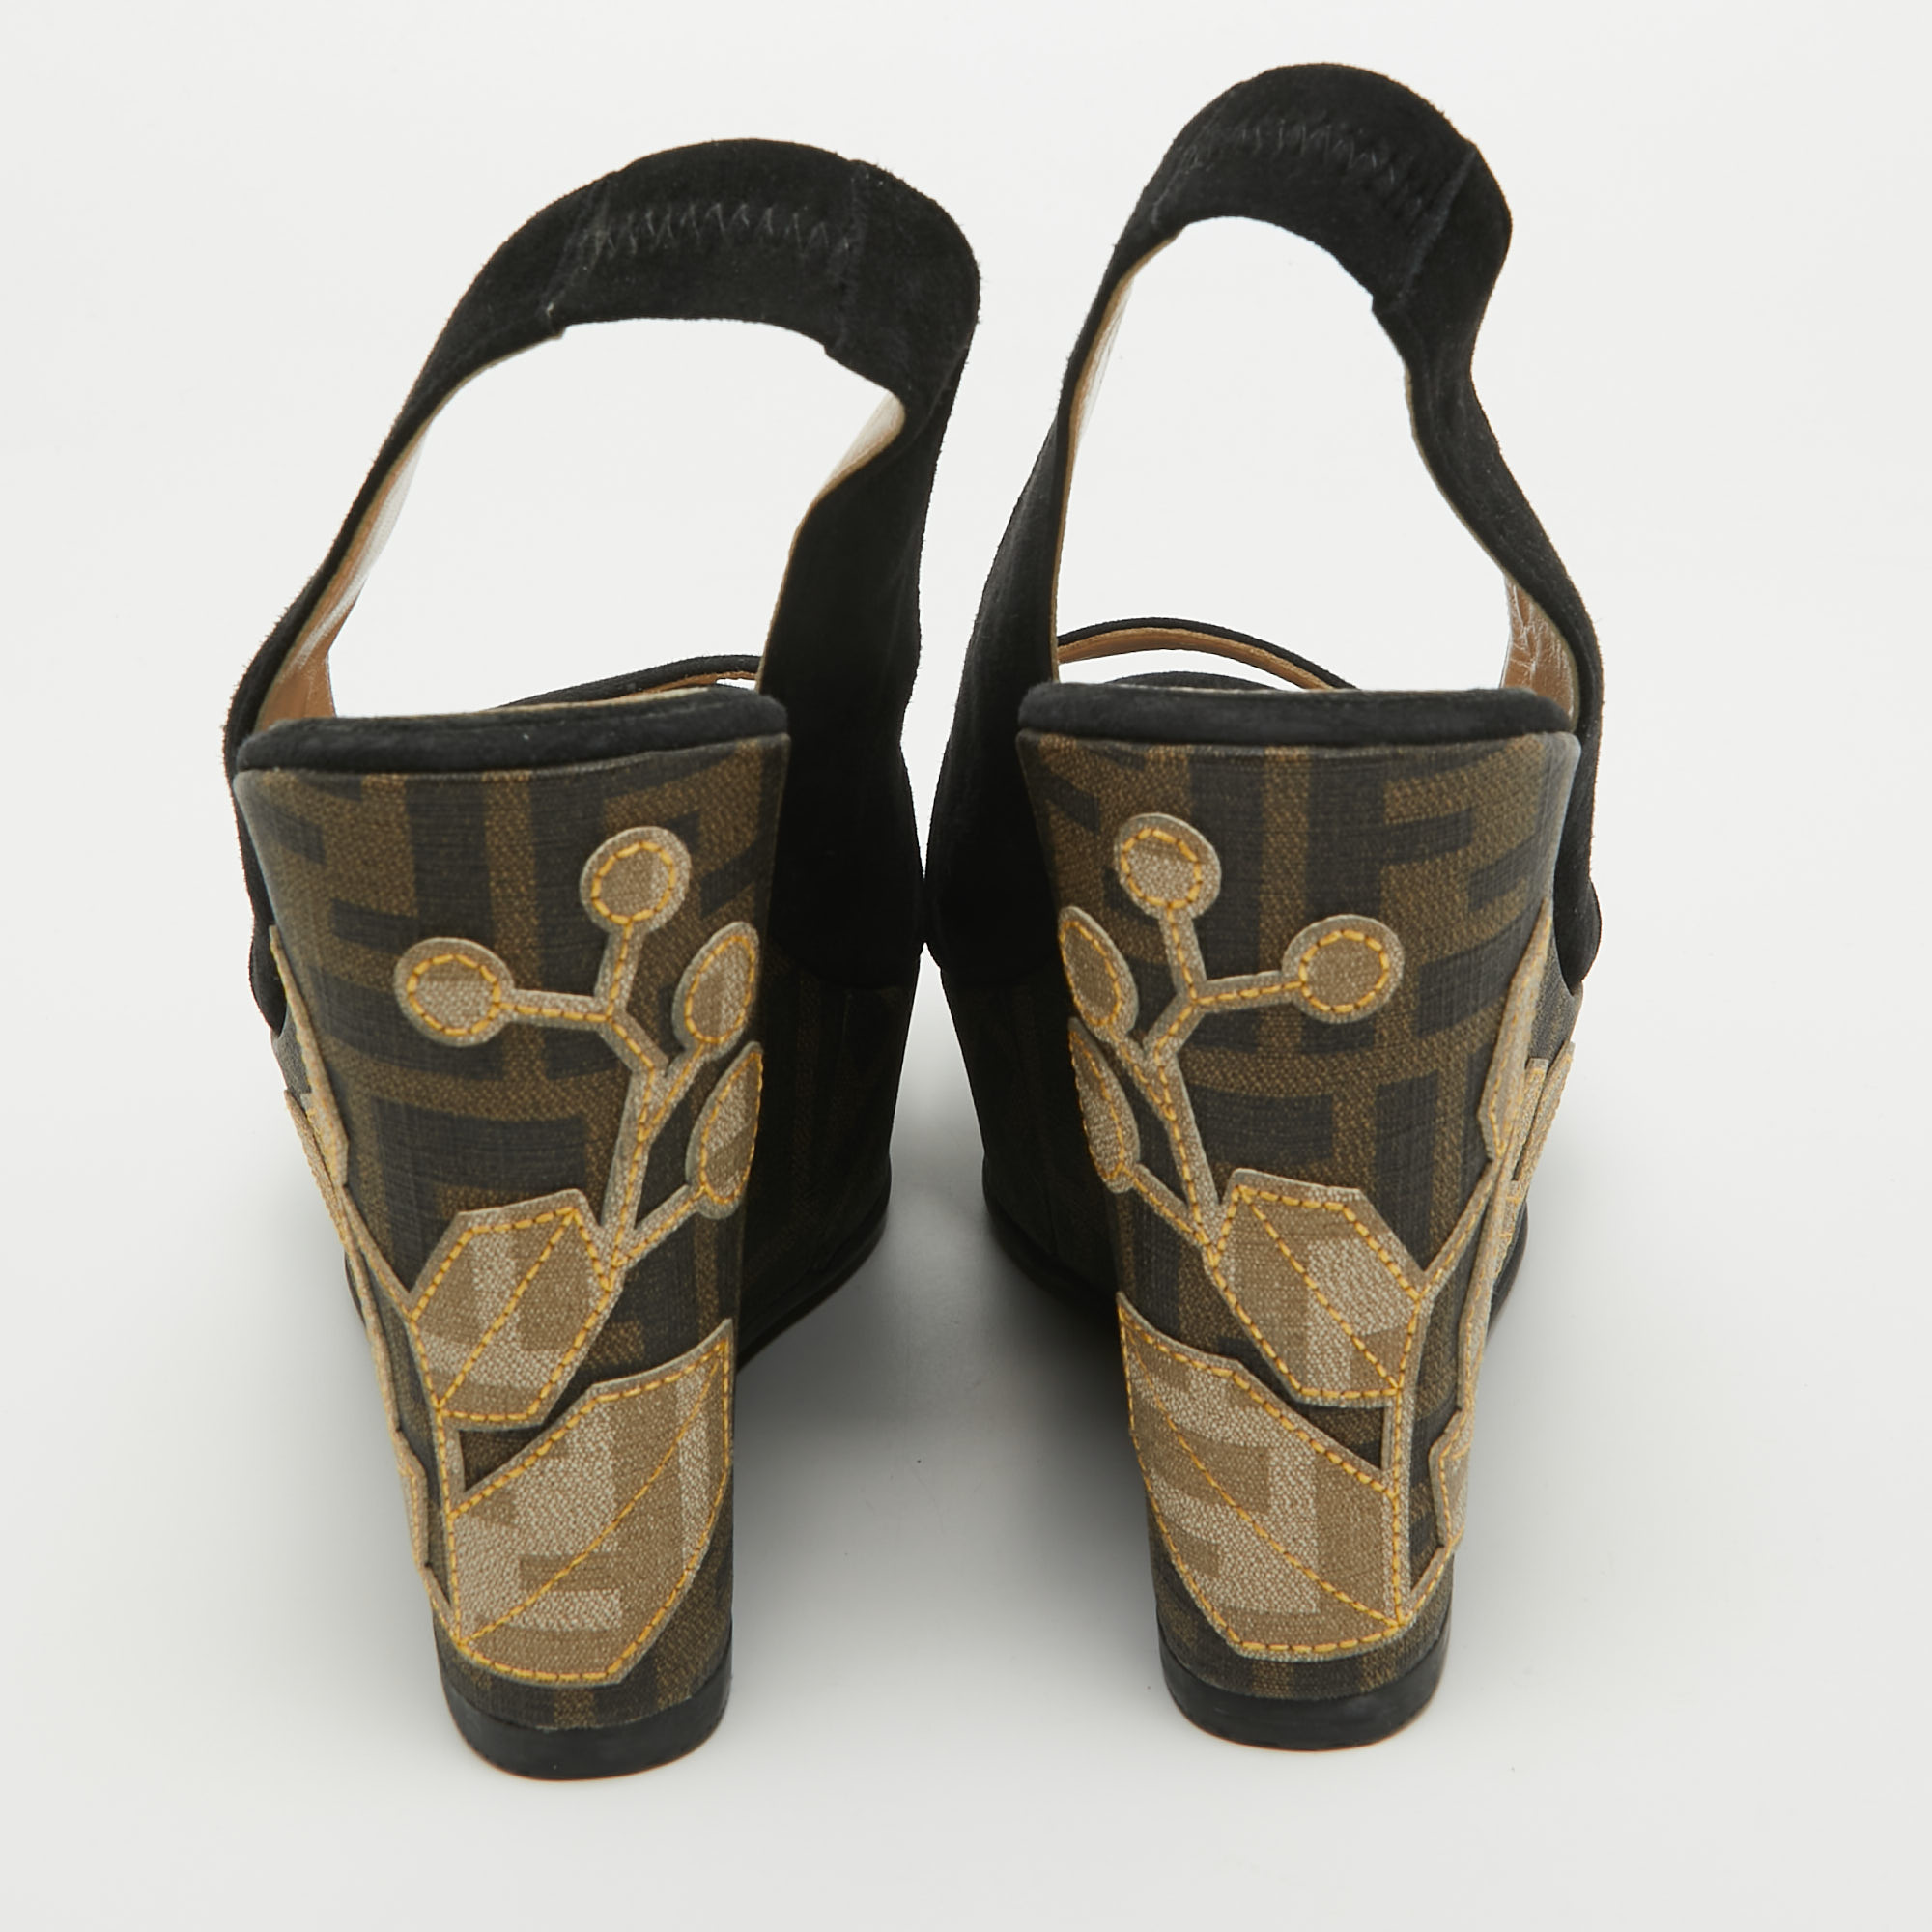 Fendi Black Suede Zucca Appliqued Wedge Platform Slingback Sandals Size 38.5